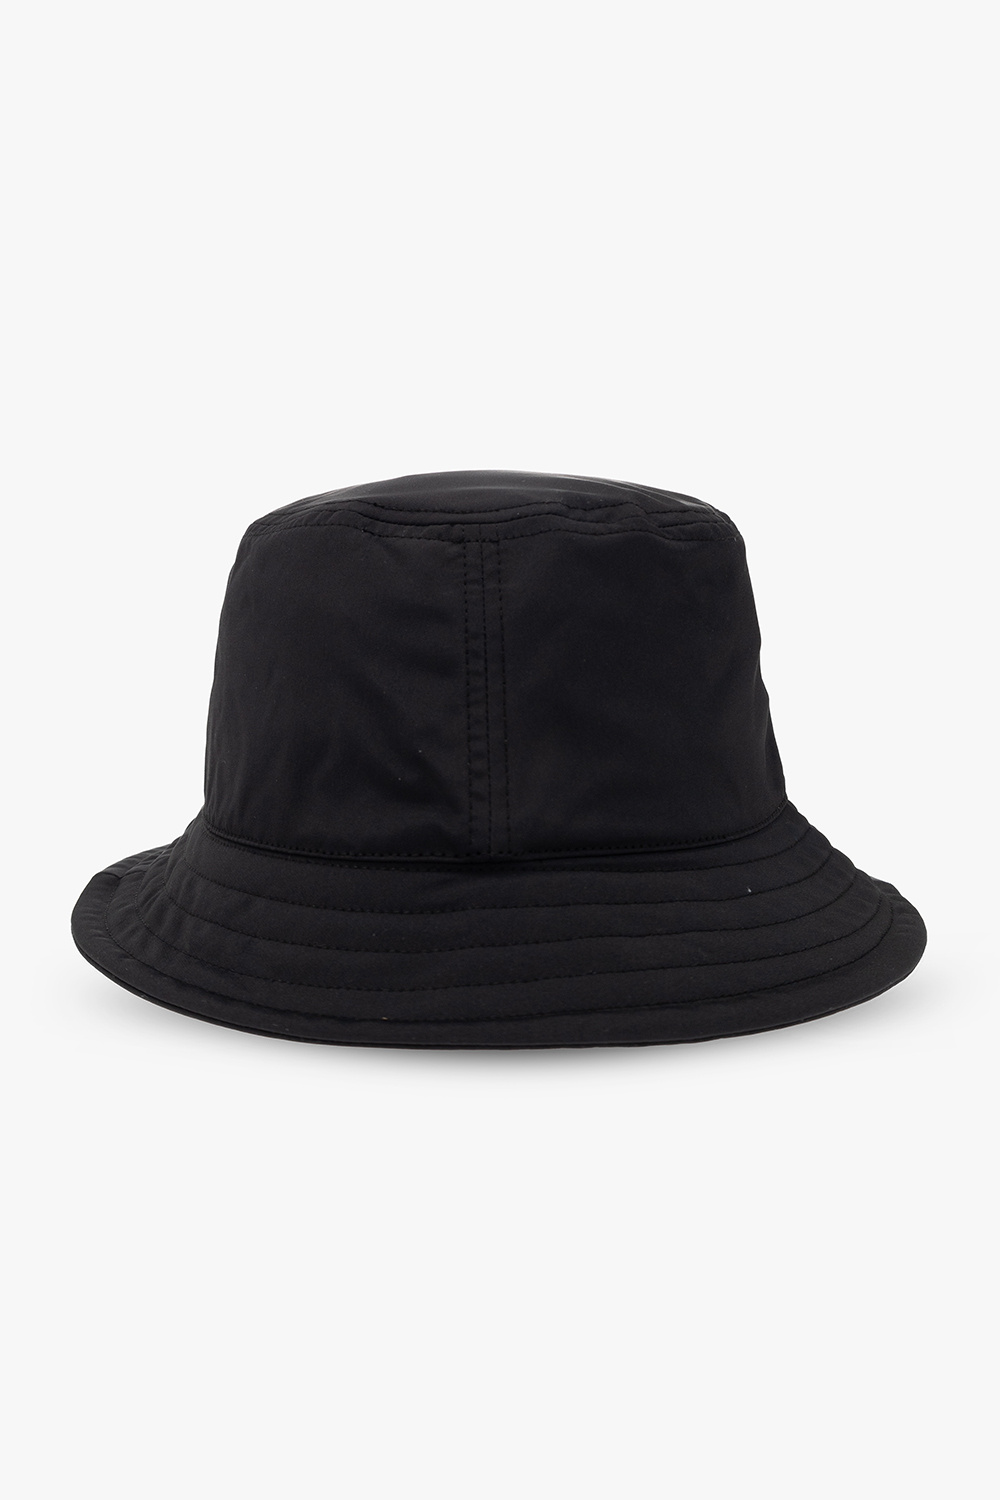 EA7 Emporio Armani Bucket hat with logo